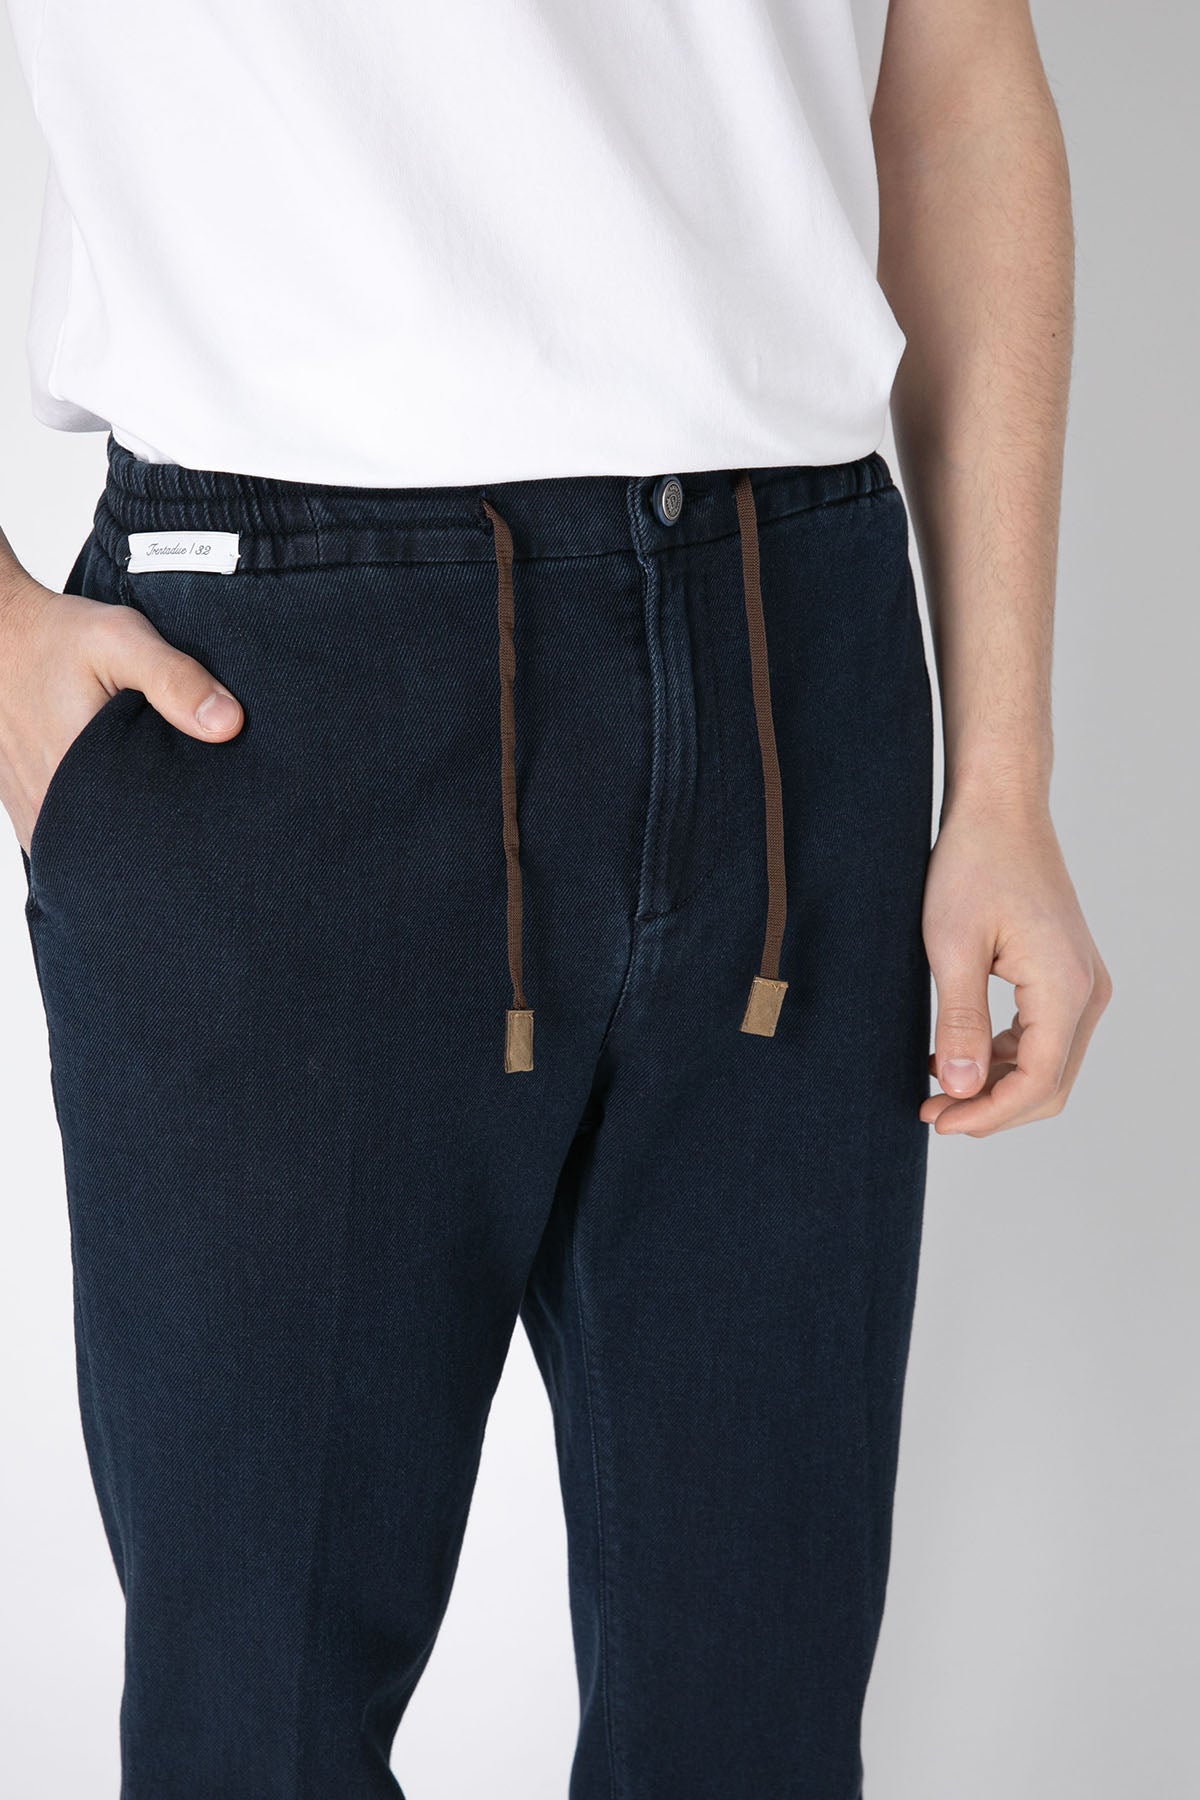 Richard J. Brown Malindi Slim Regular Fit Beli Lastikli Jeans-Libas Trendy Fashion Store